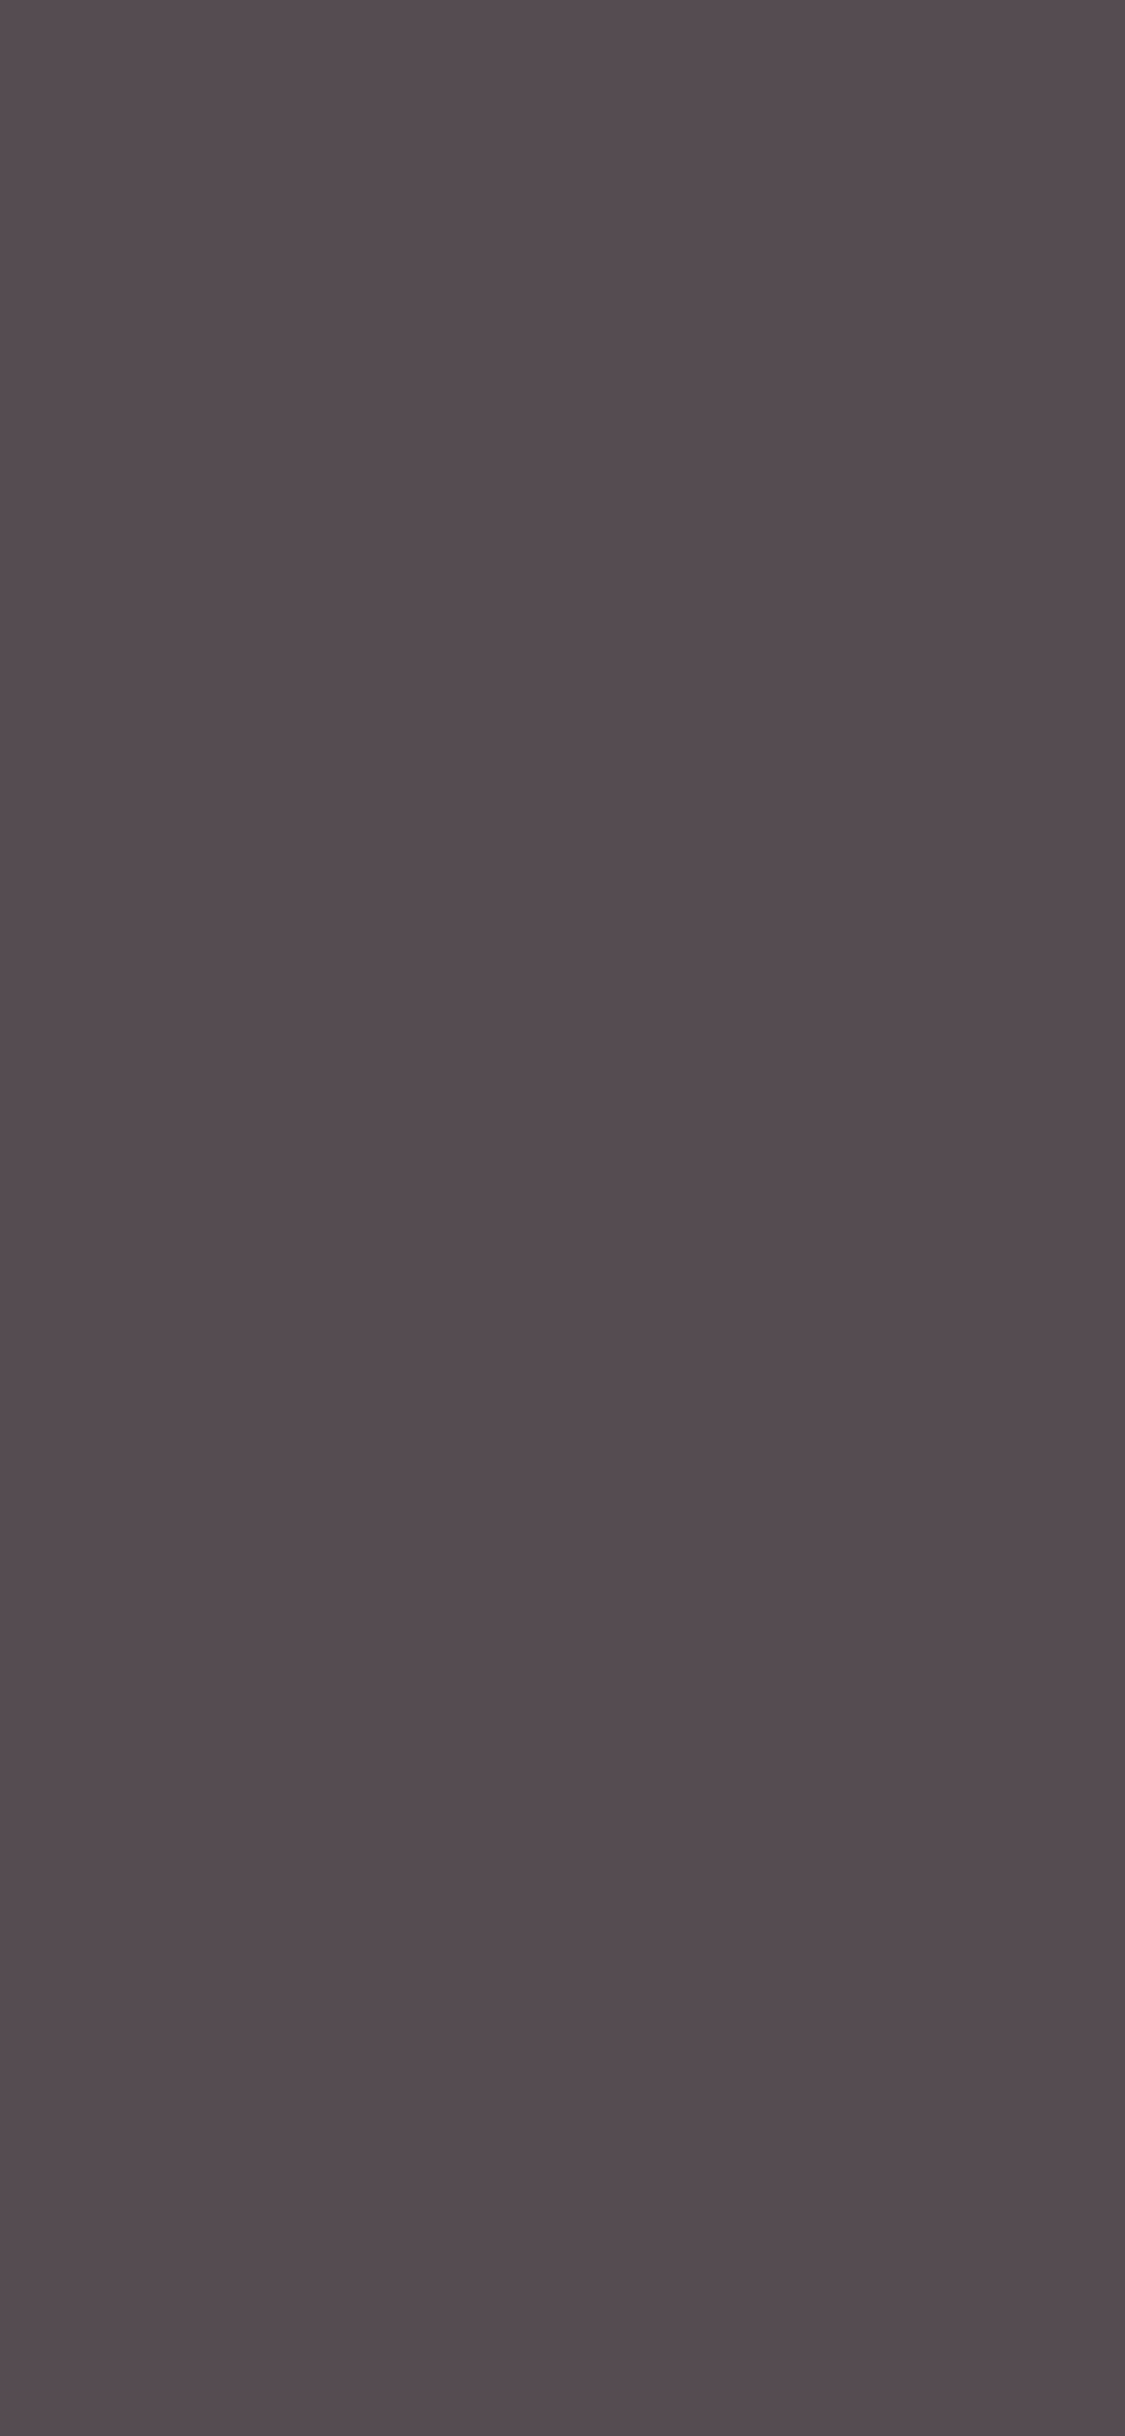 1125x2436 Dark Liver Solid Color Background